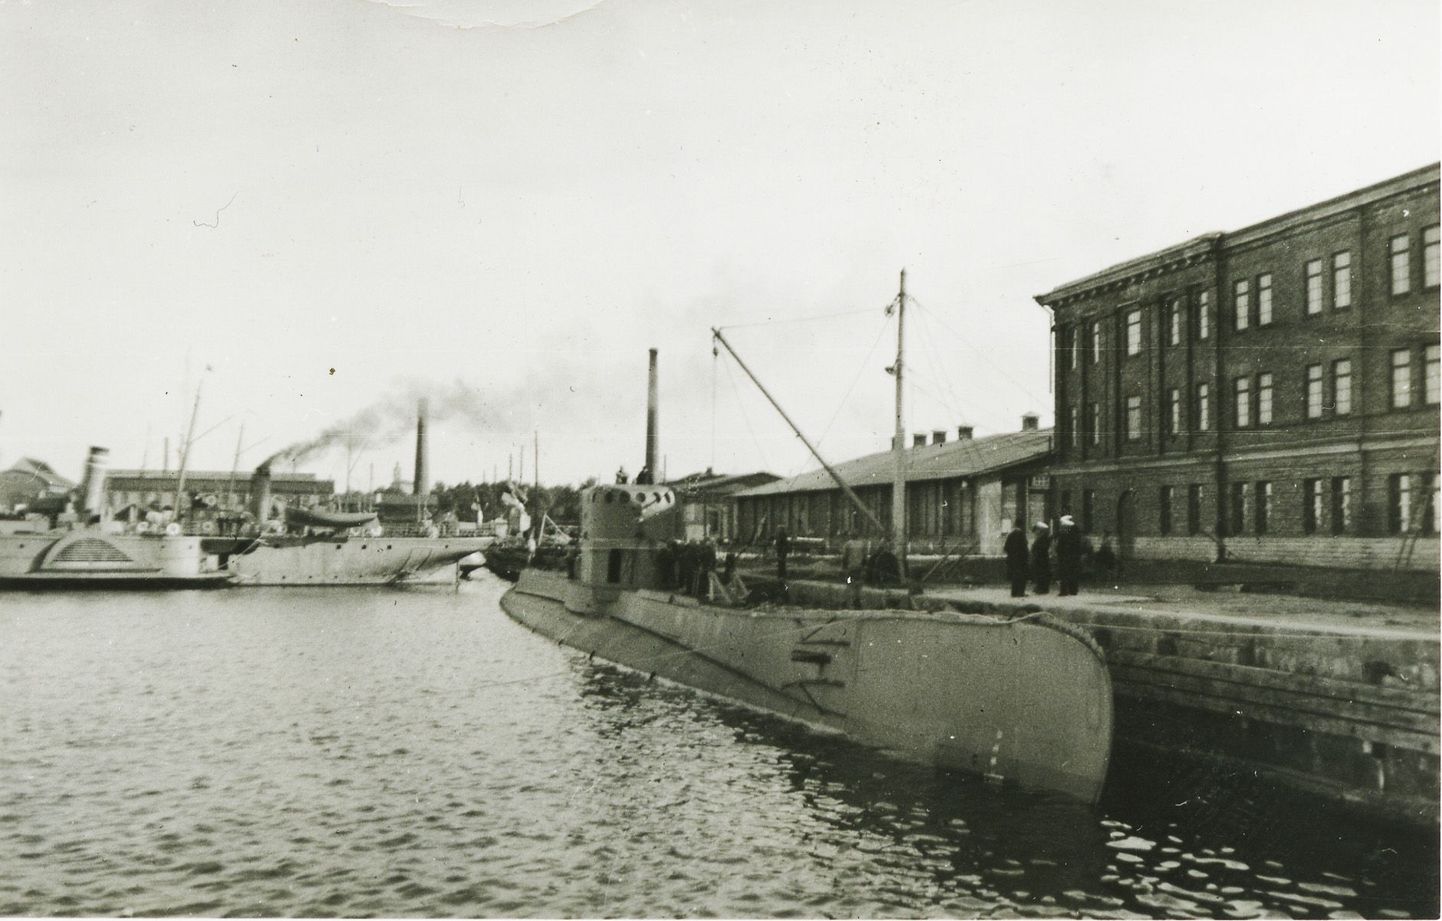 Poola allveelaev Orzel Tallinna sõjasadamas. Laeva põgenemine andis Nõukogude Liidule ettekäände süüdistada Eestit vaenuriikide abistamises.